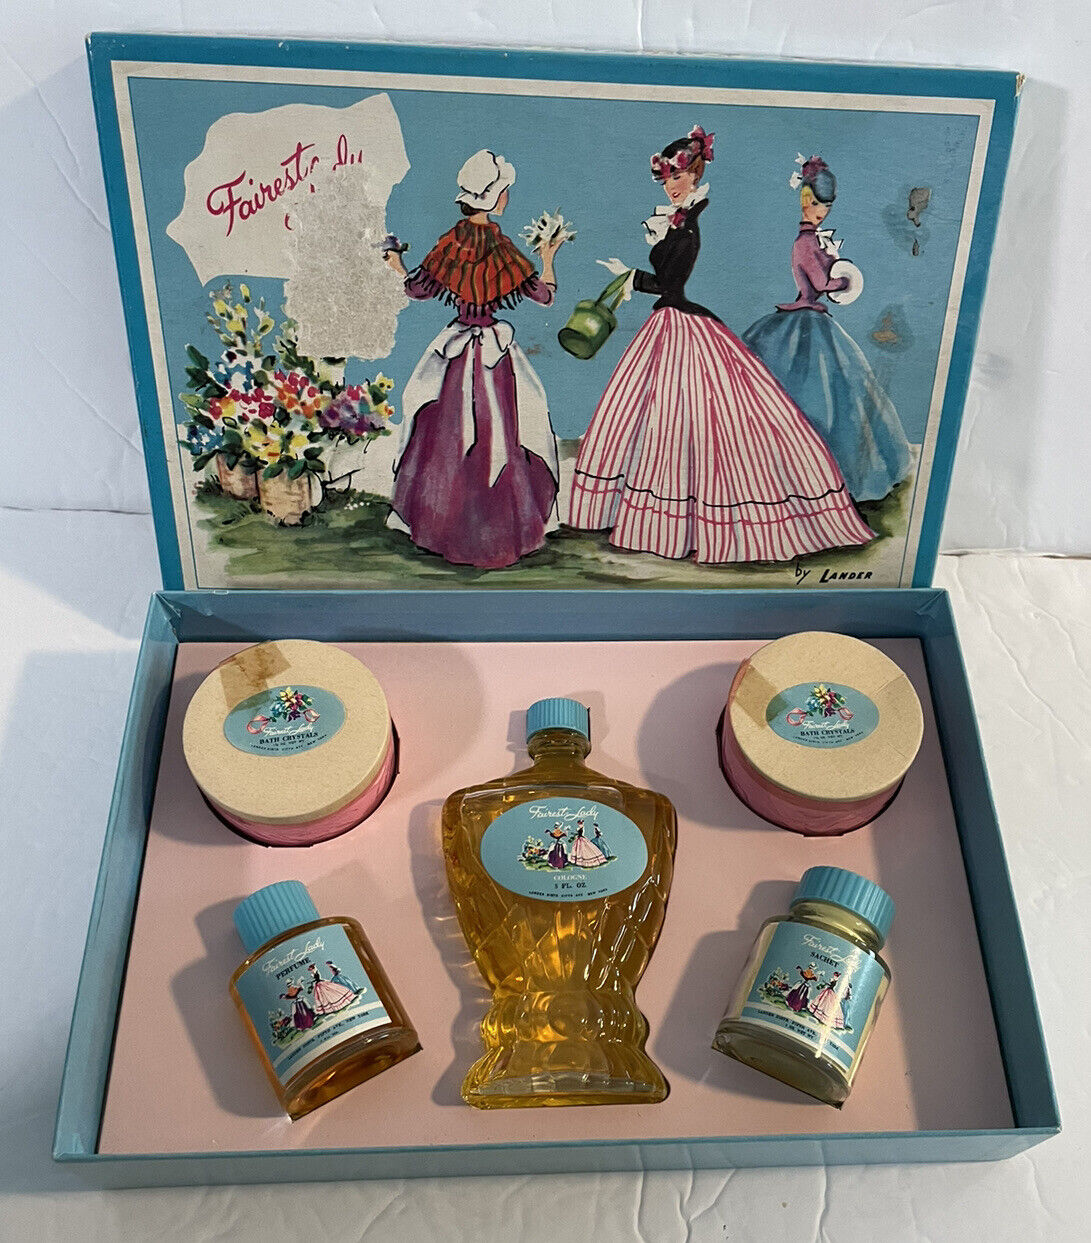 VTG Fairest Lady By Lander Gift Set Perfume Cologne Sachet Bath Crystals NOS